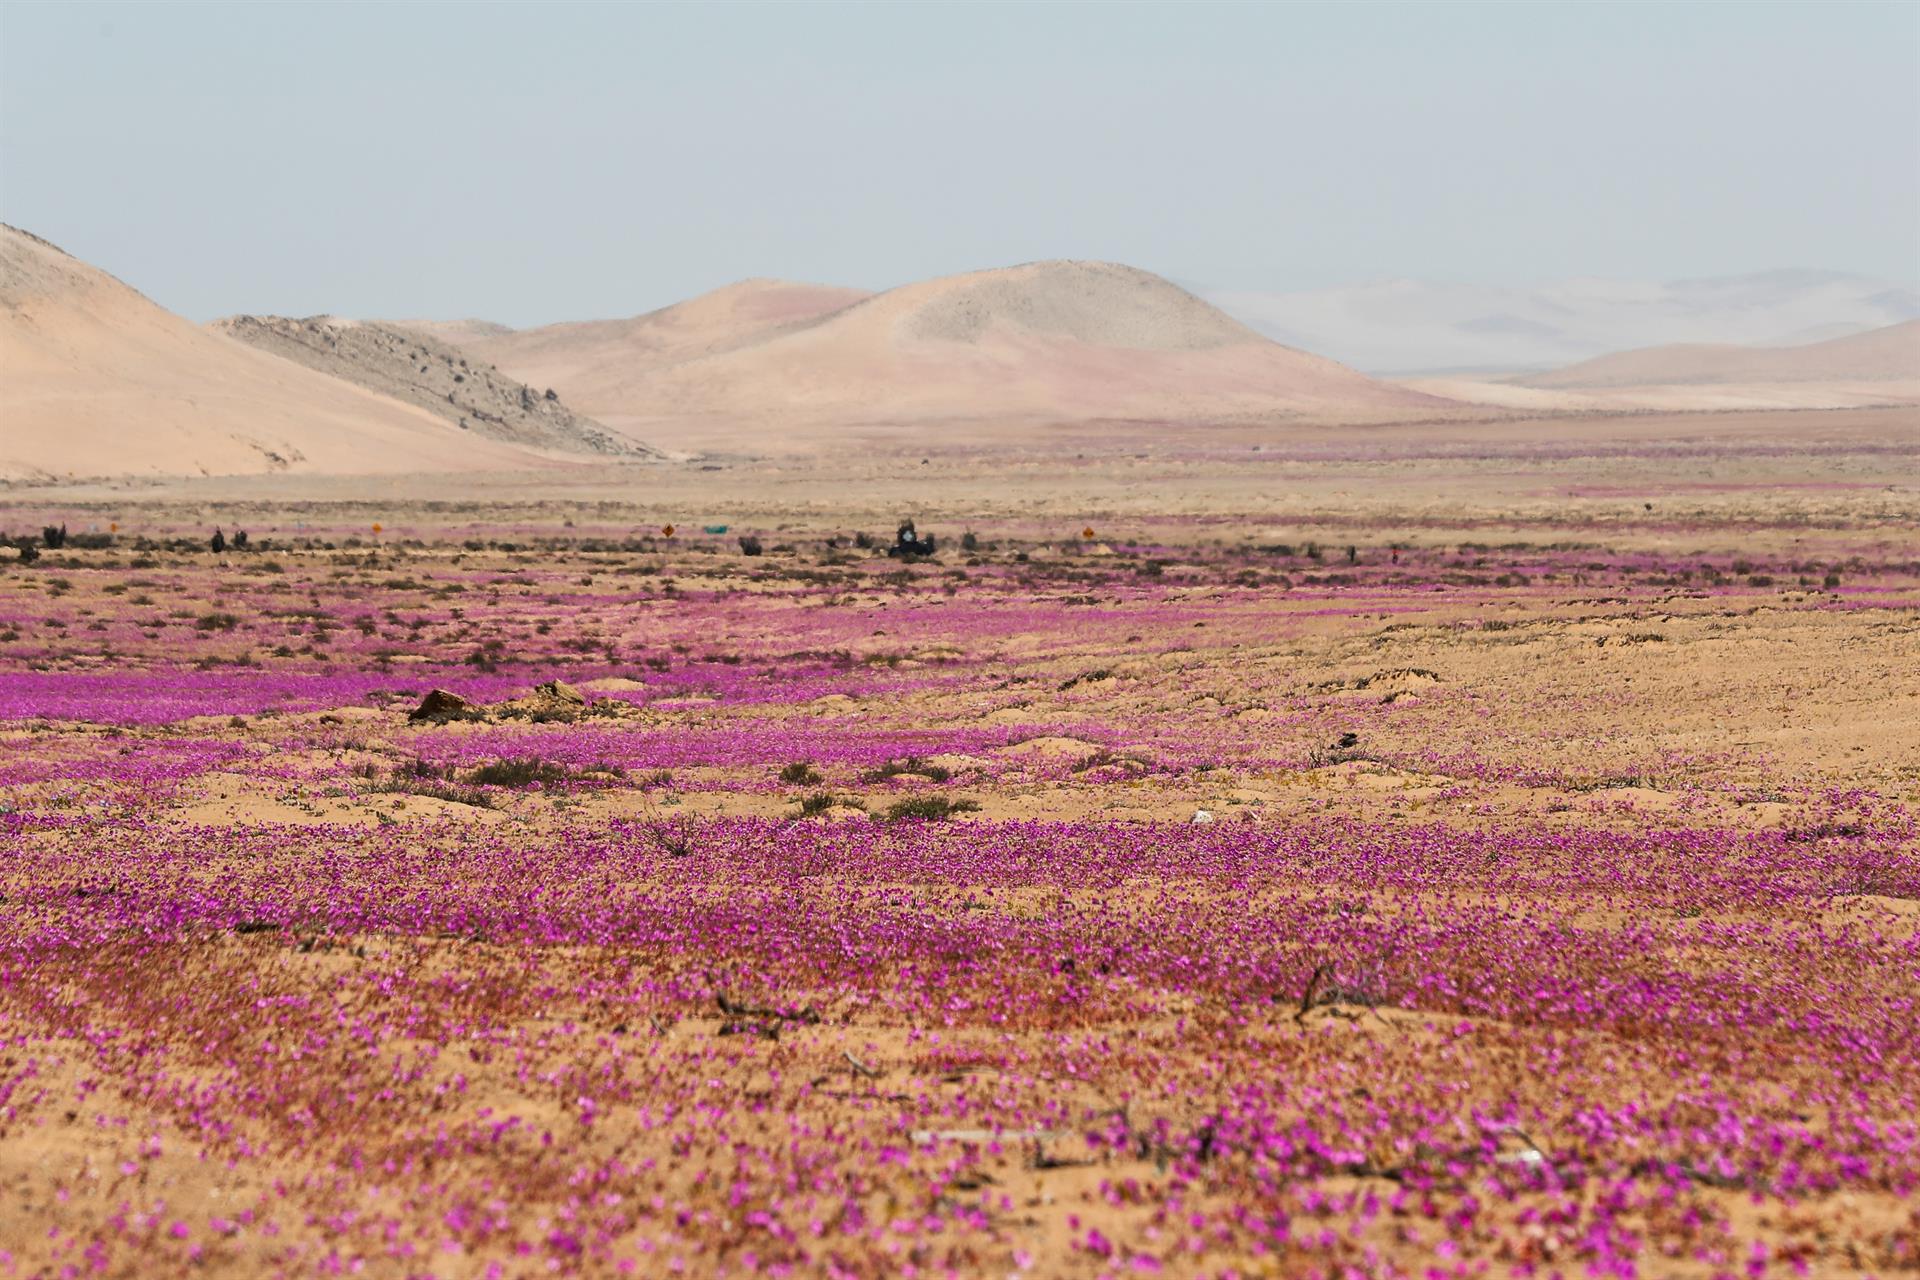 El “milagro” de las flores en el desierto de Atacama está bajo amenaza (FOTOS)